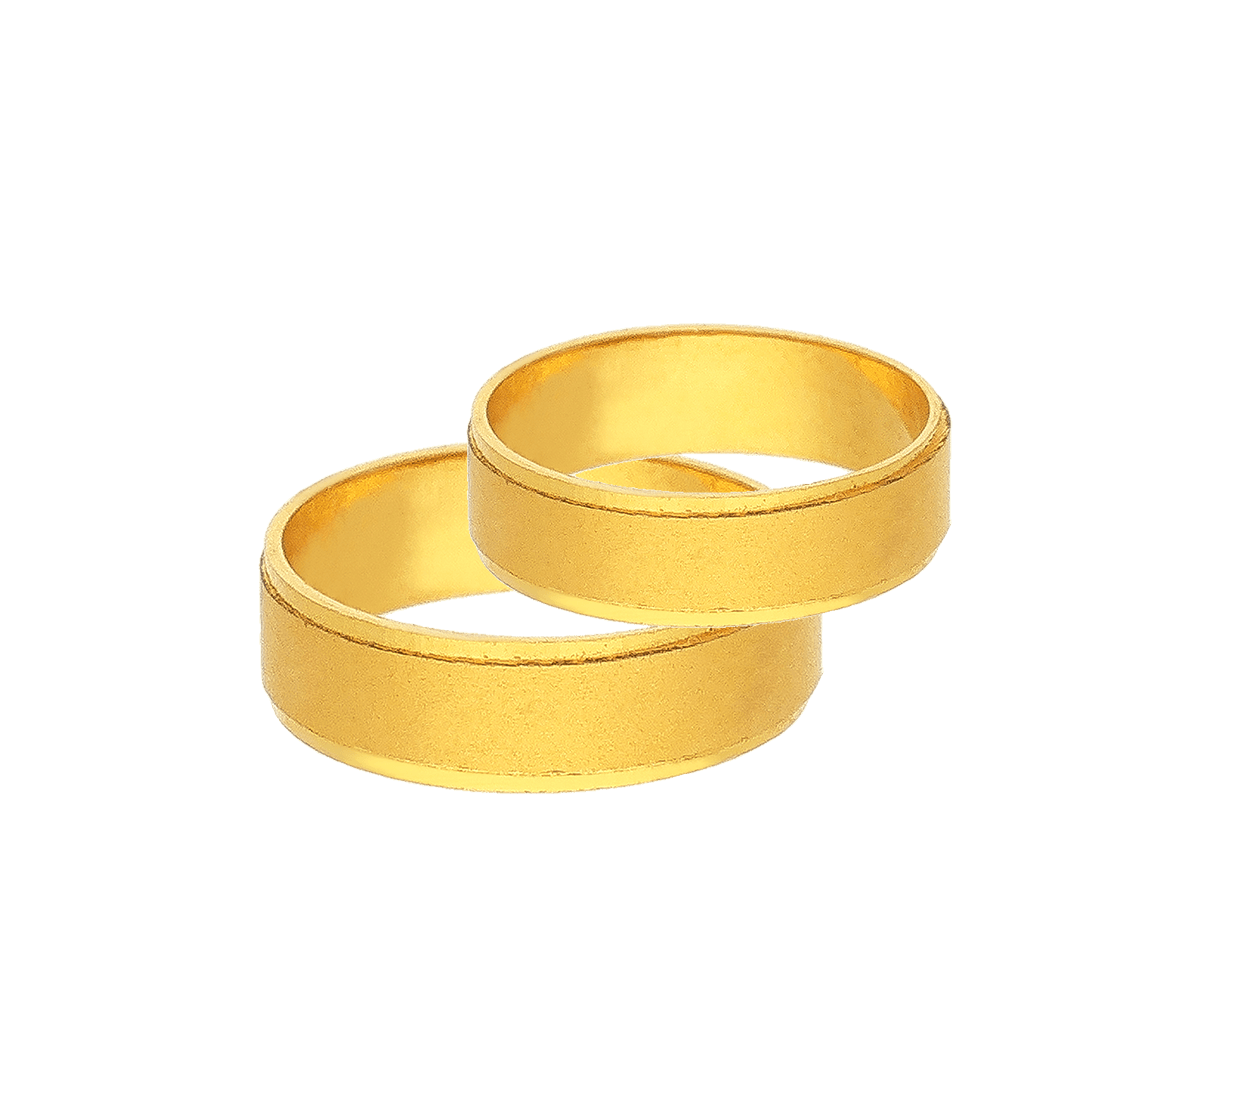 Multicolored Adjustable 'Tukra' Single Toe Ring – Vamika Silver, Jaipur